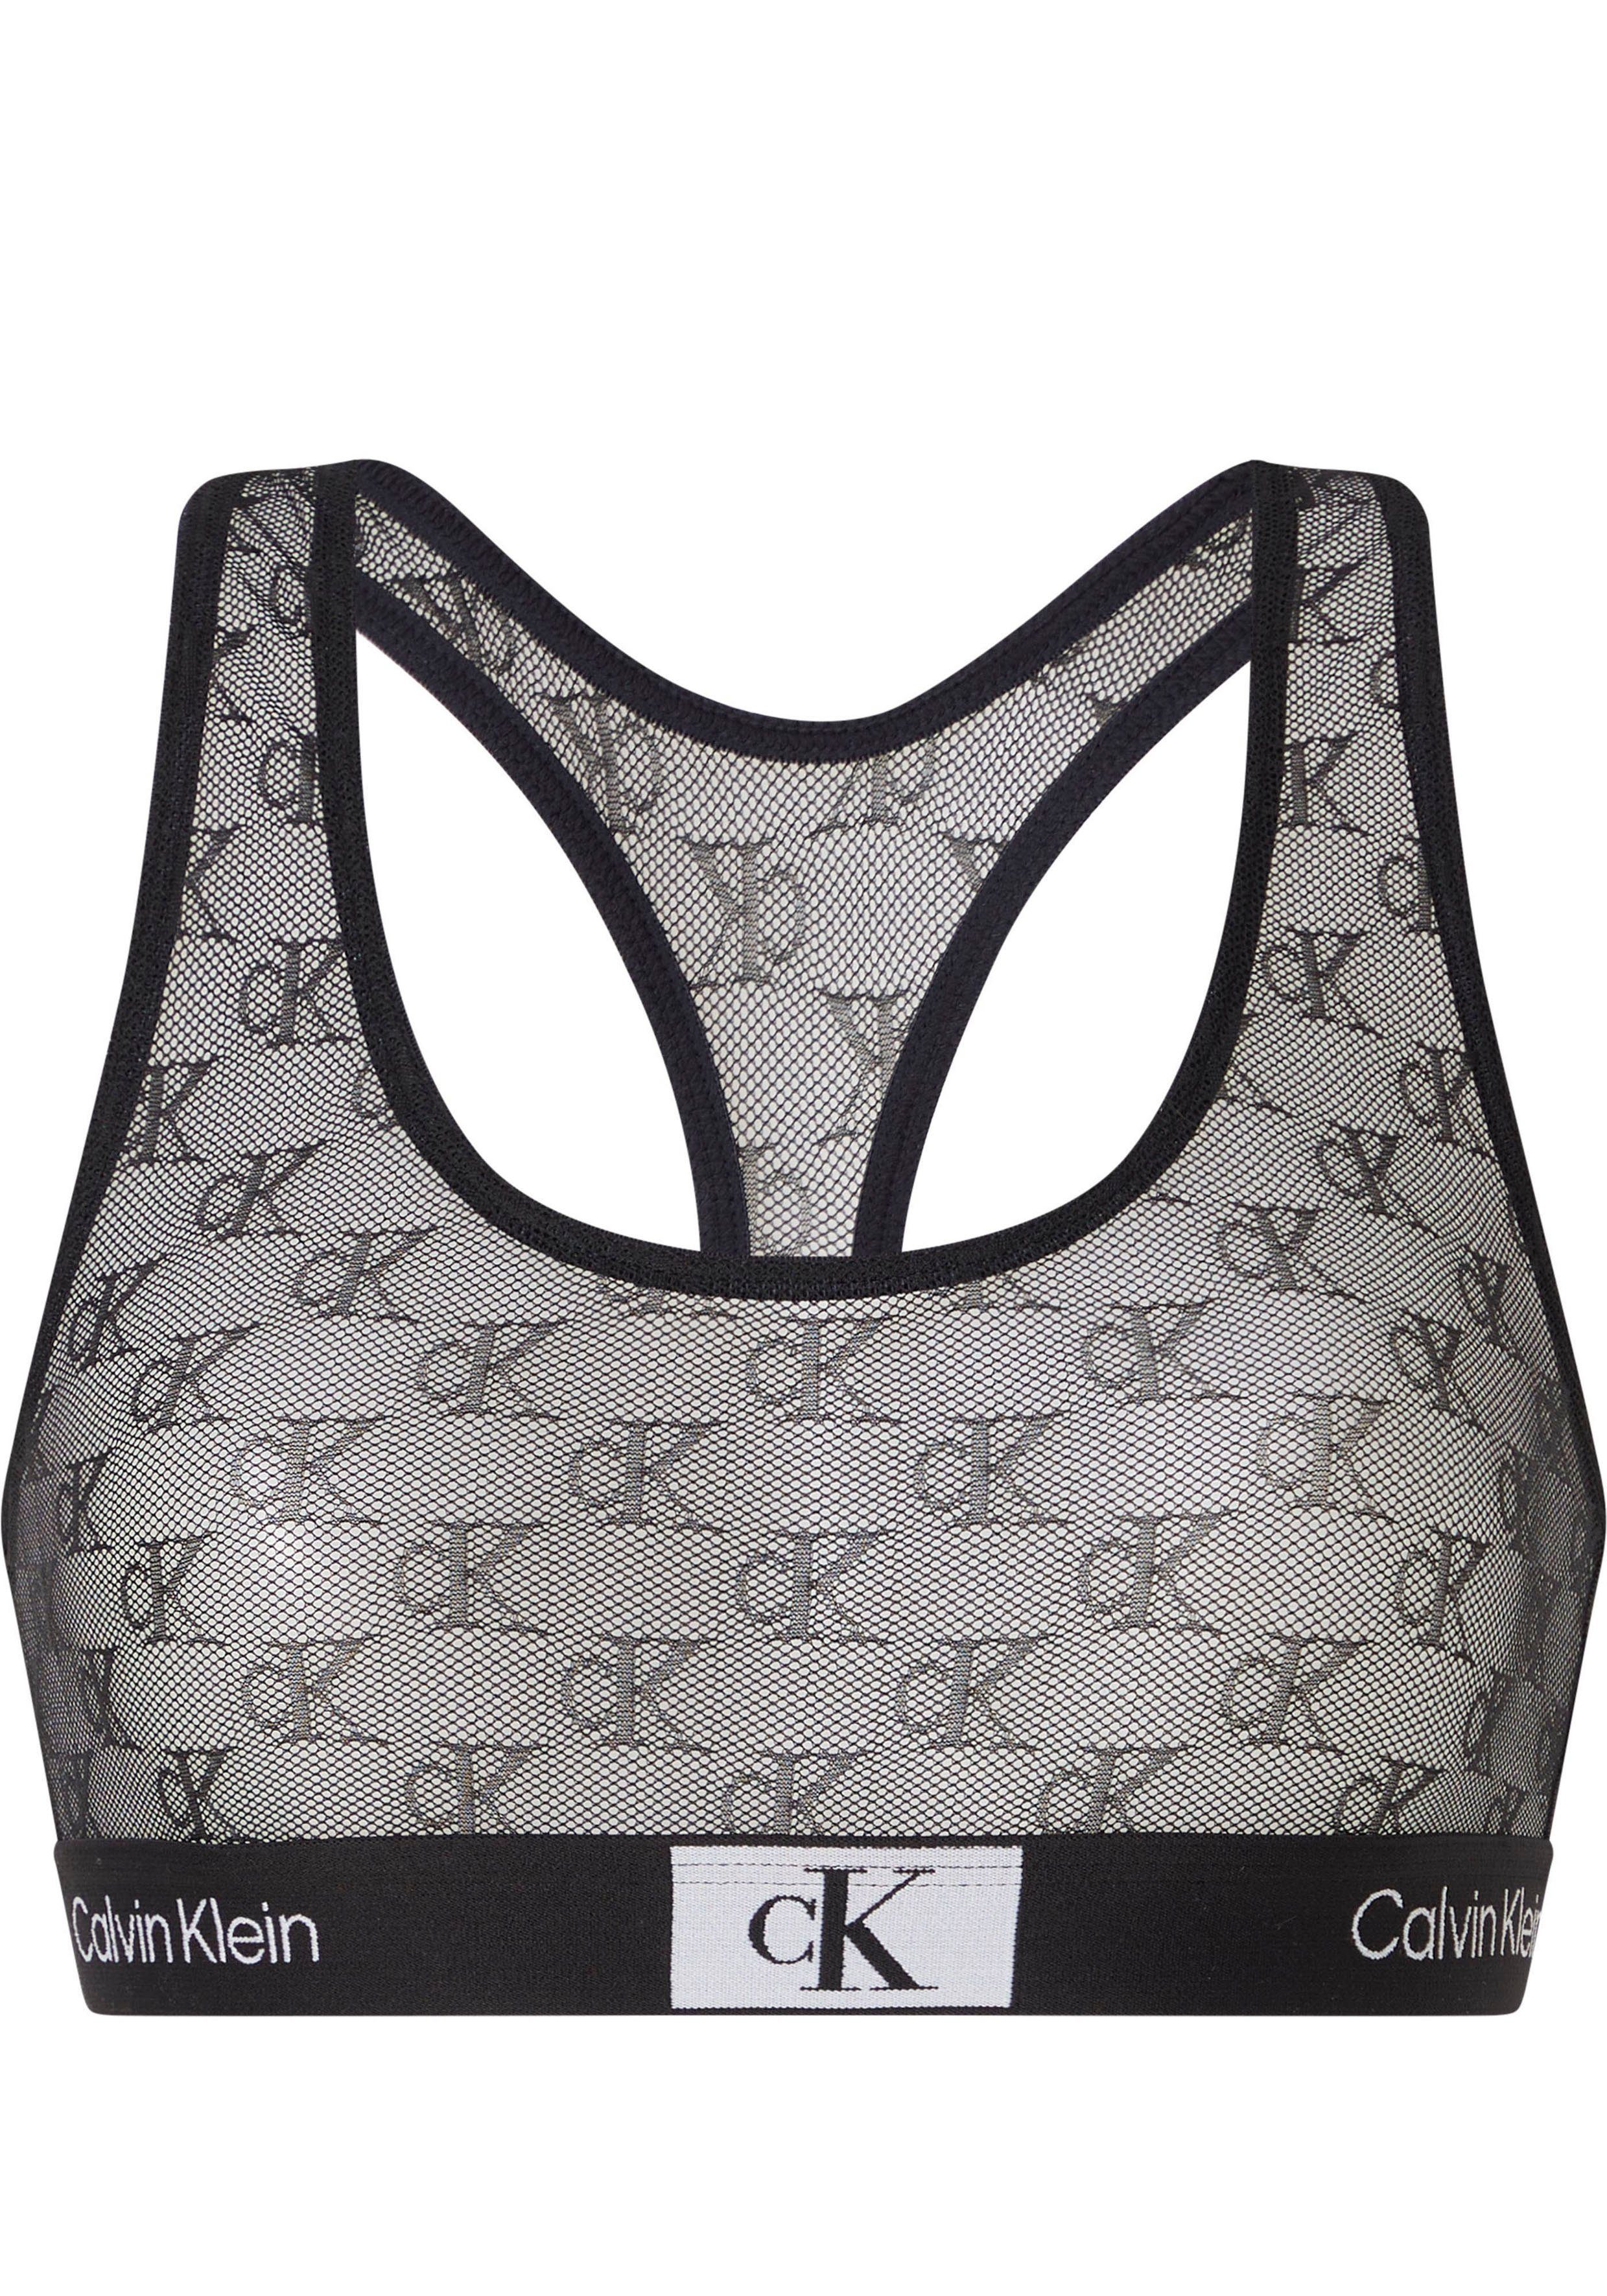 Calvin Klein Underwear Bralette-BH UNLINED BRALETTE mit CK-Monogrammen